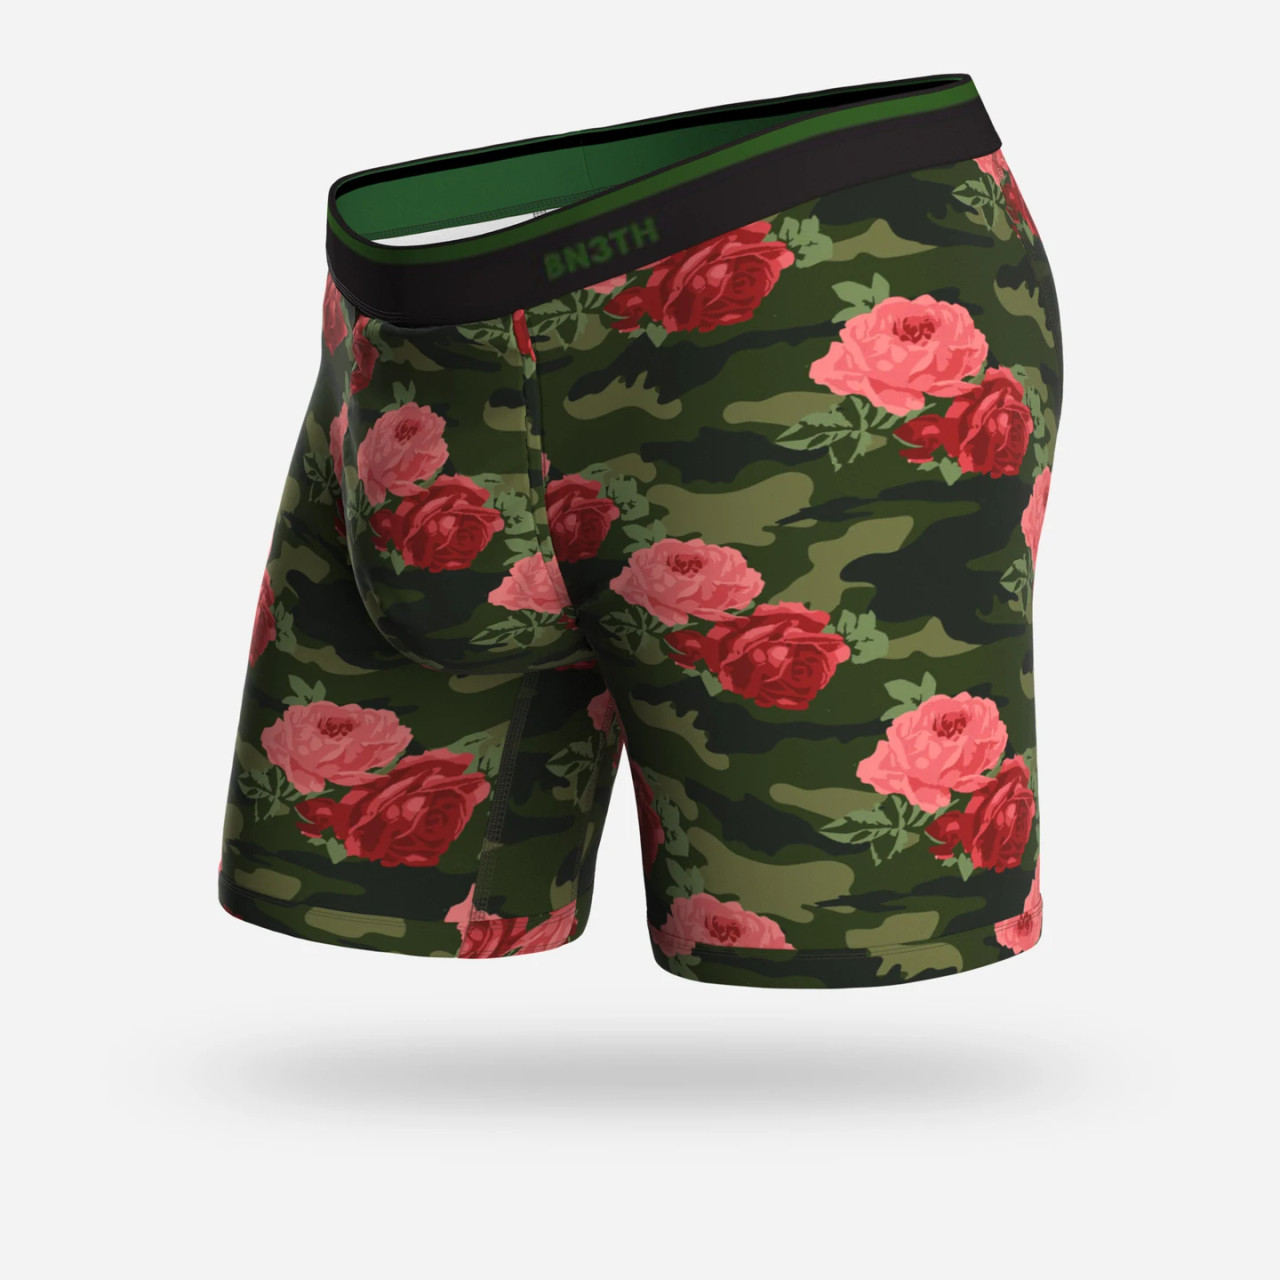 BN3TH Underwear Classic Boxer Brief Print - Camo Rose - BUNKER